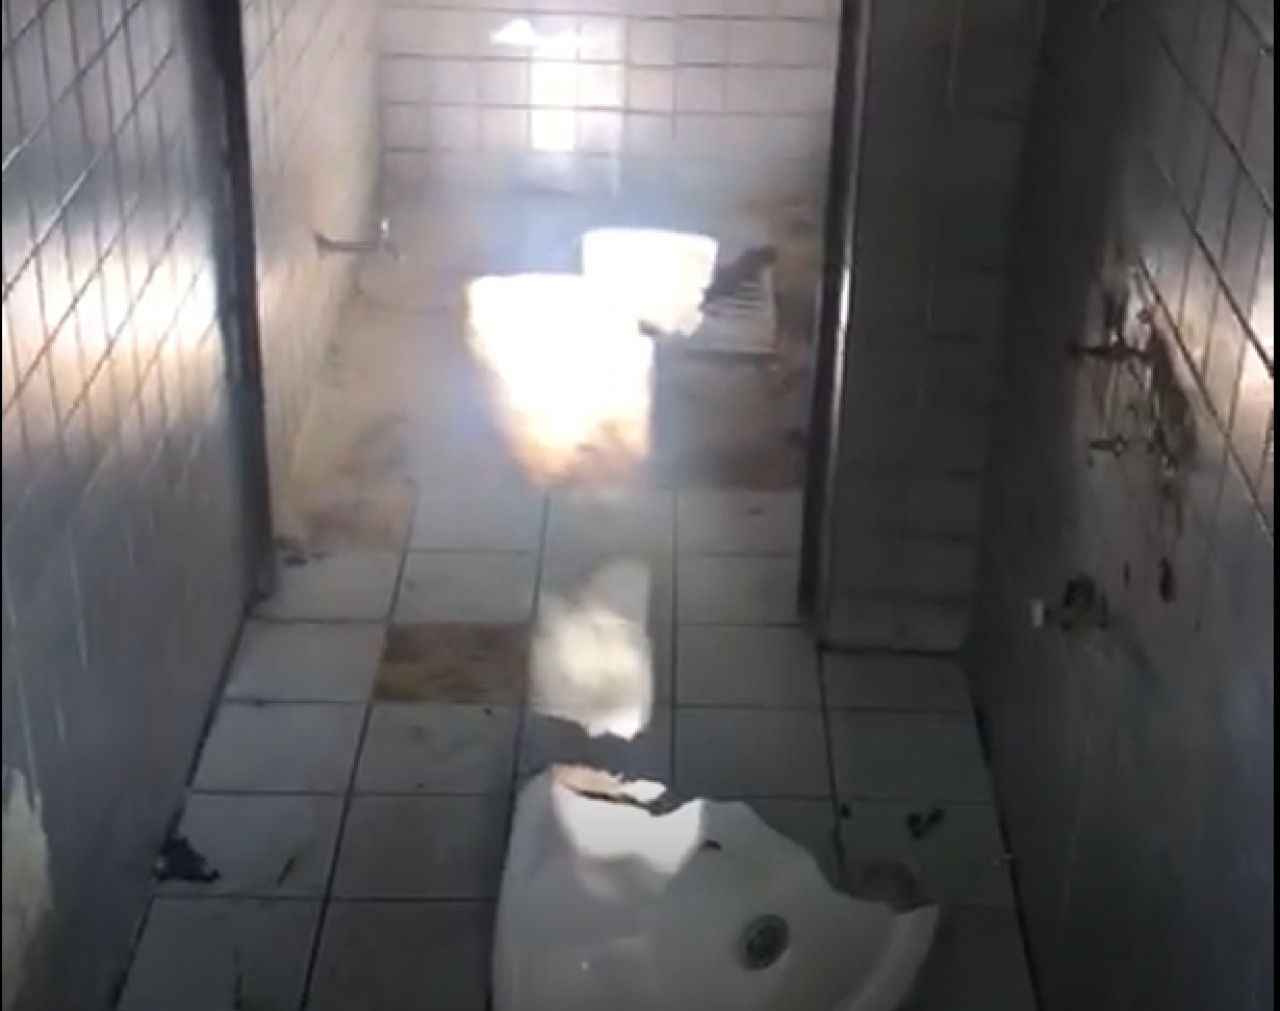 Turist kaynayan bölgedeki tuvalet harabe halde